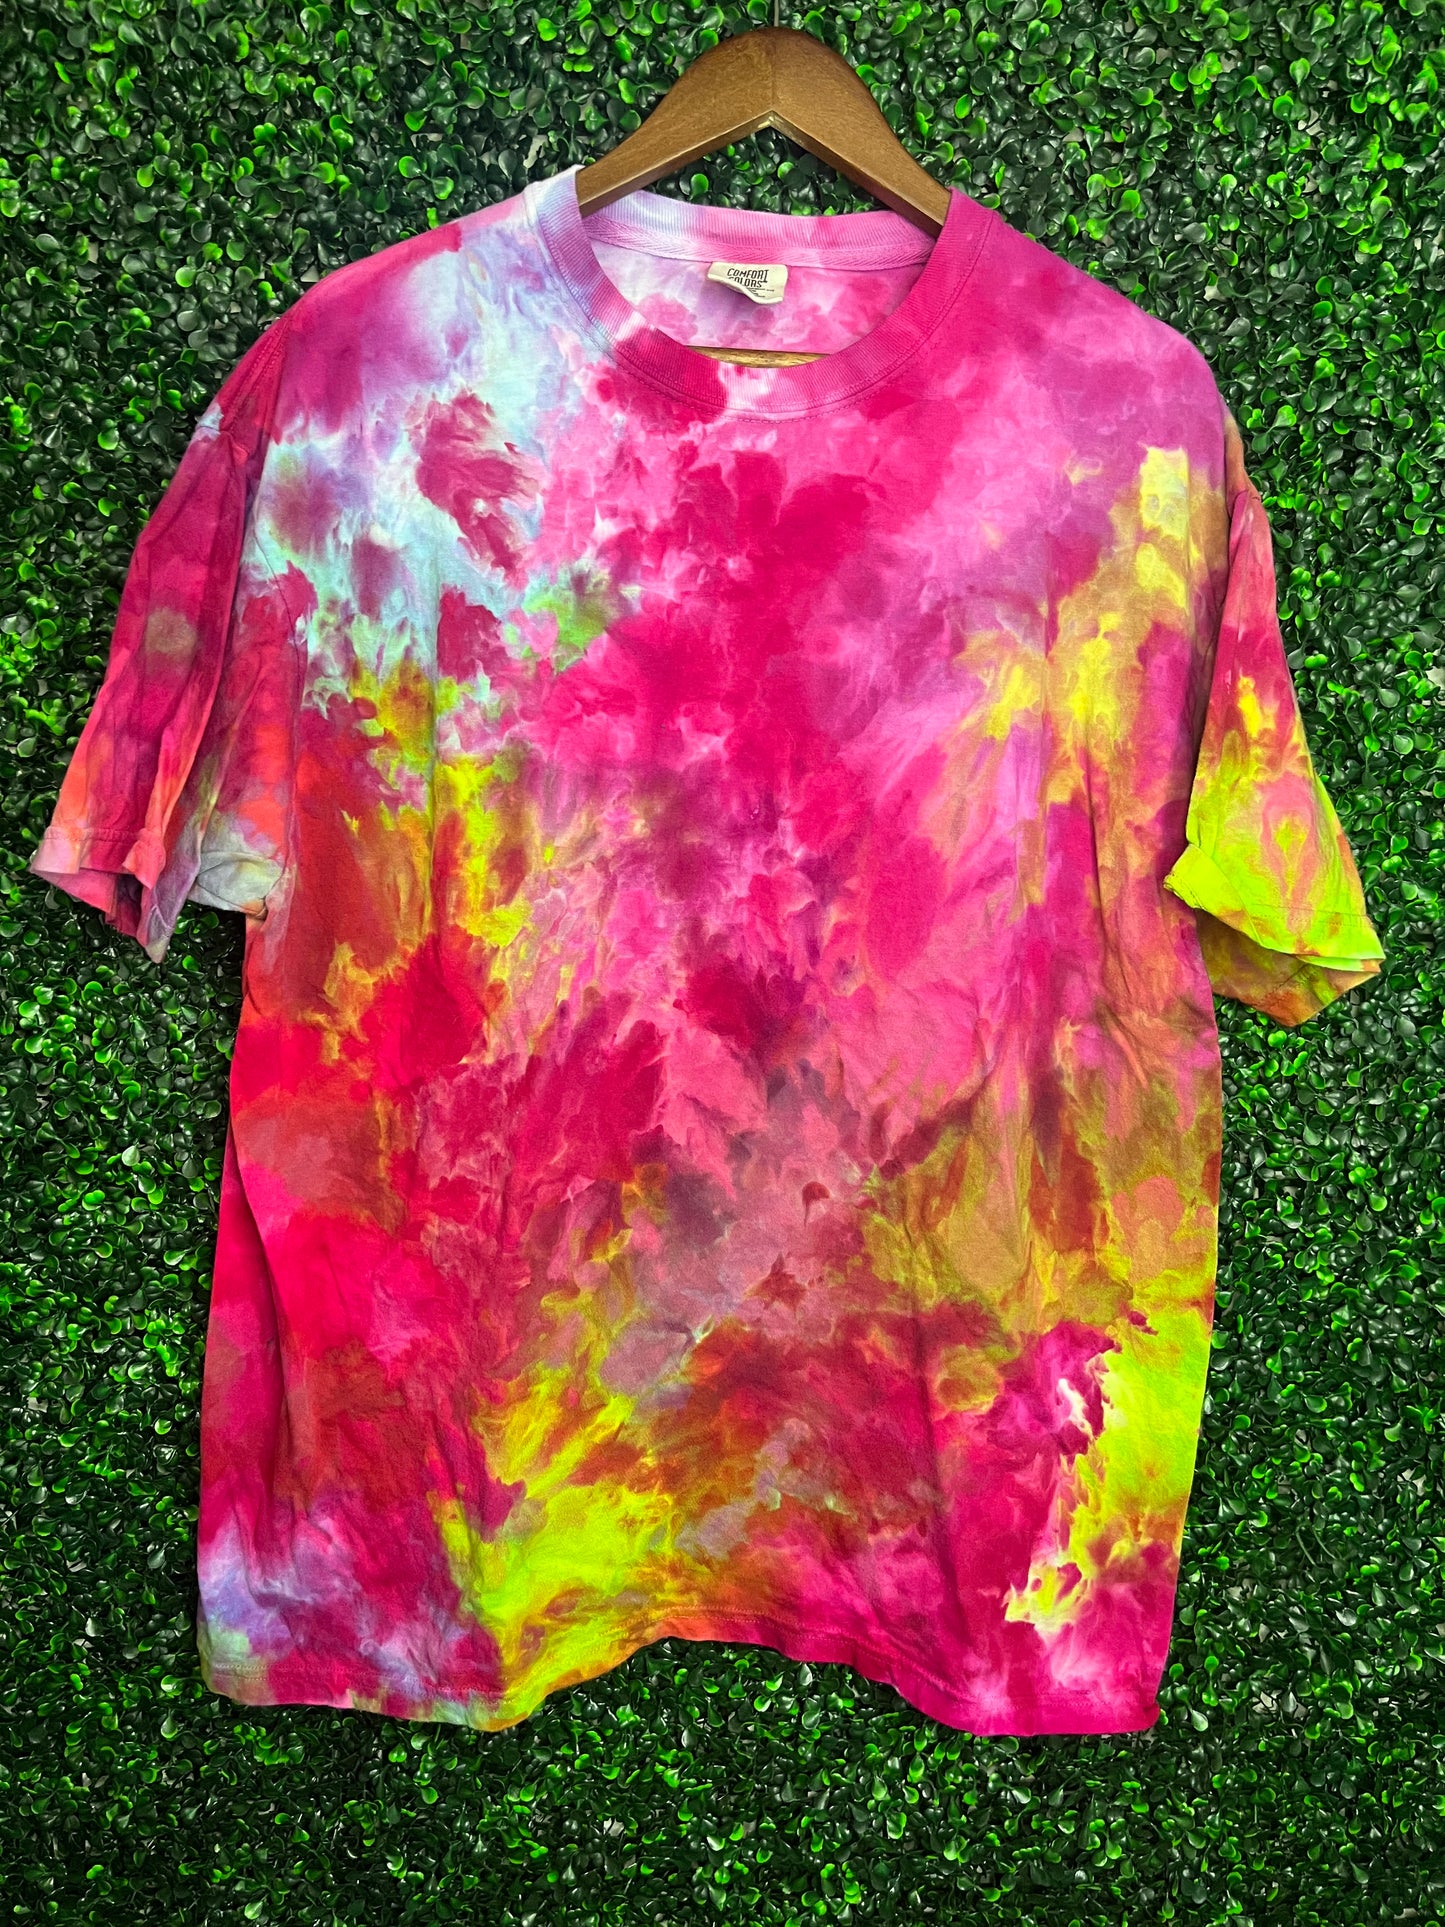 Size XL Comfort Colors acid rainbow scrunch tie dye